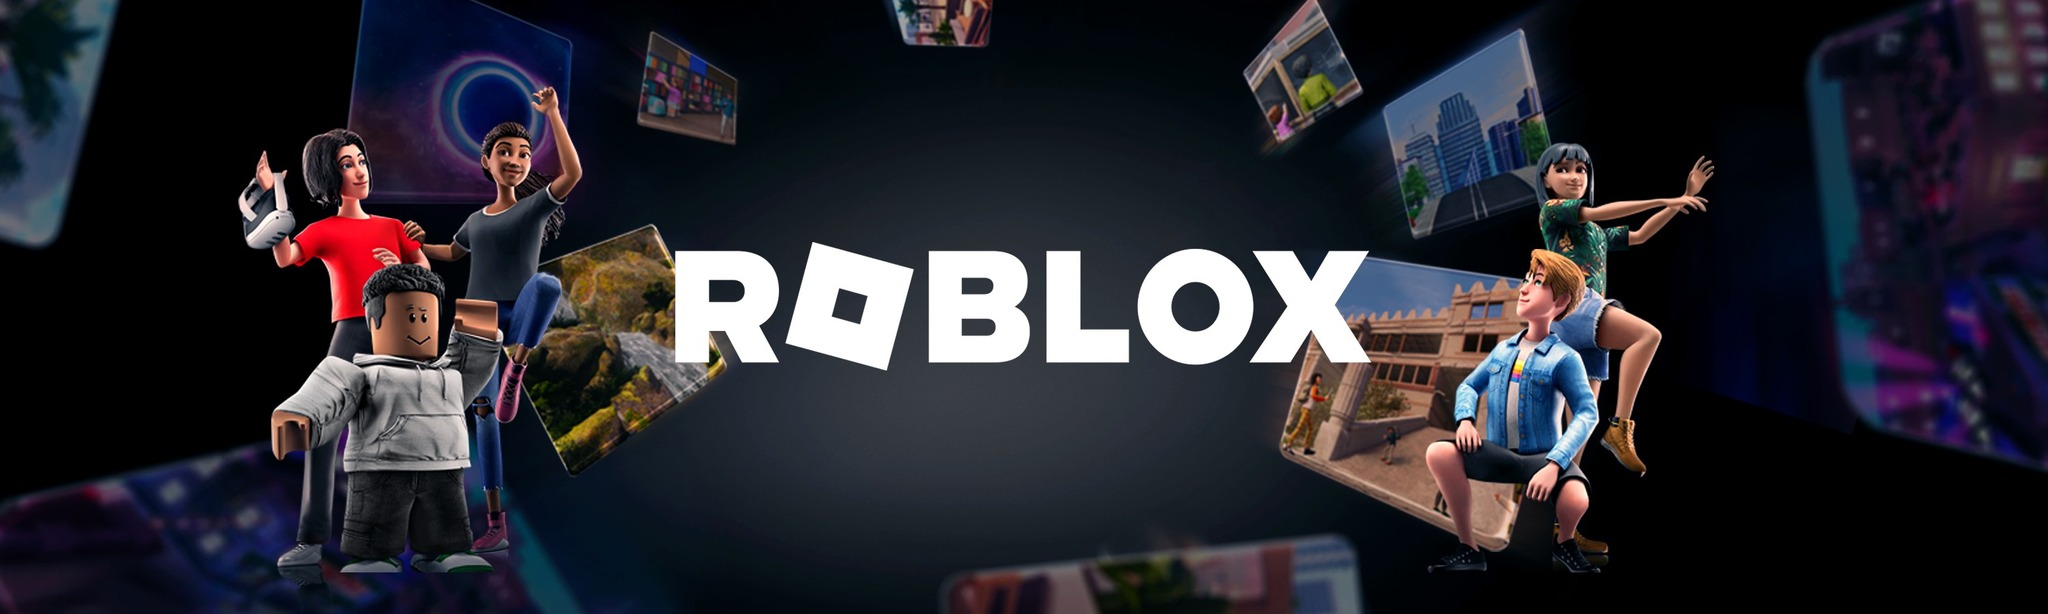 Roblox Apk Download latest version 2.605.660- com.roblox.client